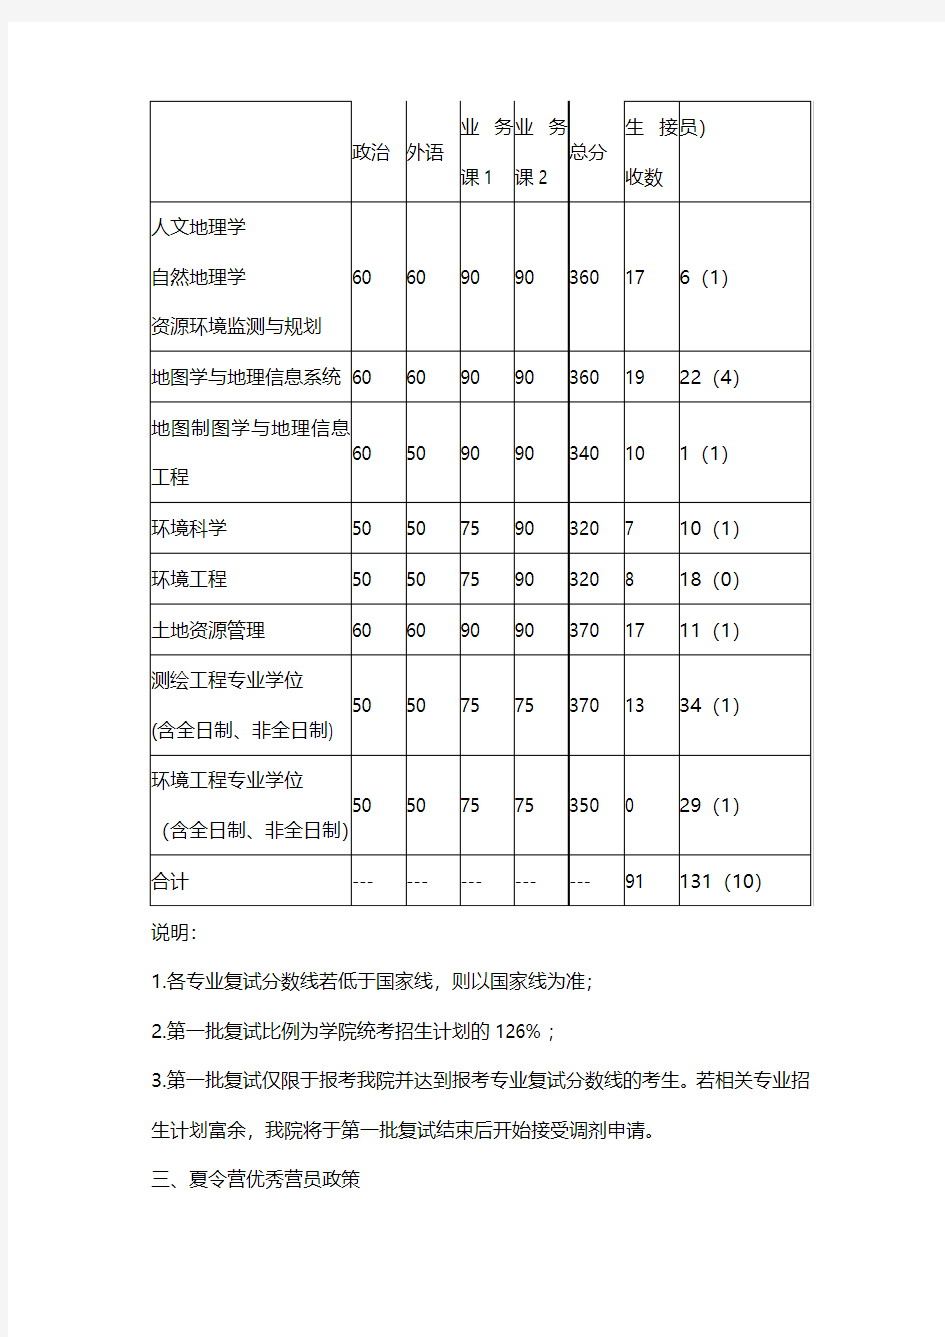 2019武汉大学资源与环境科学学院硕士研究生招生复试工作实施细则